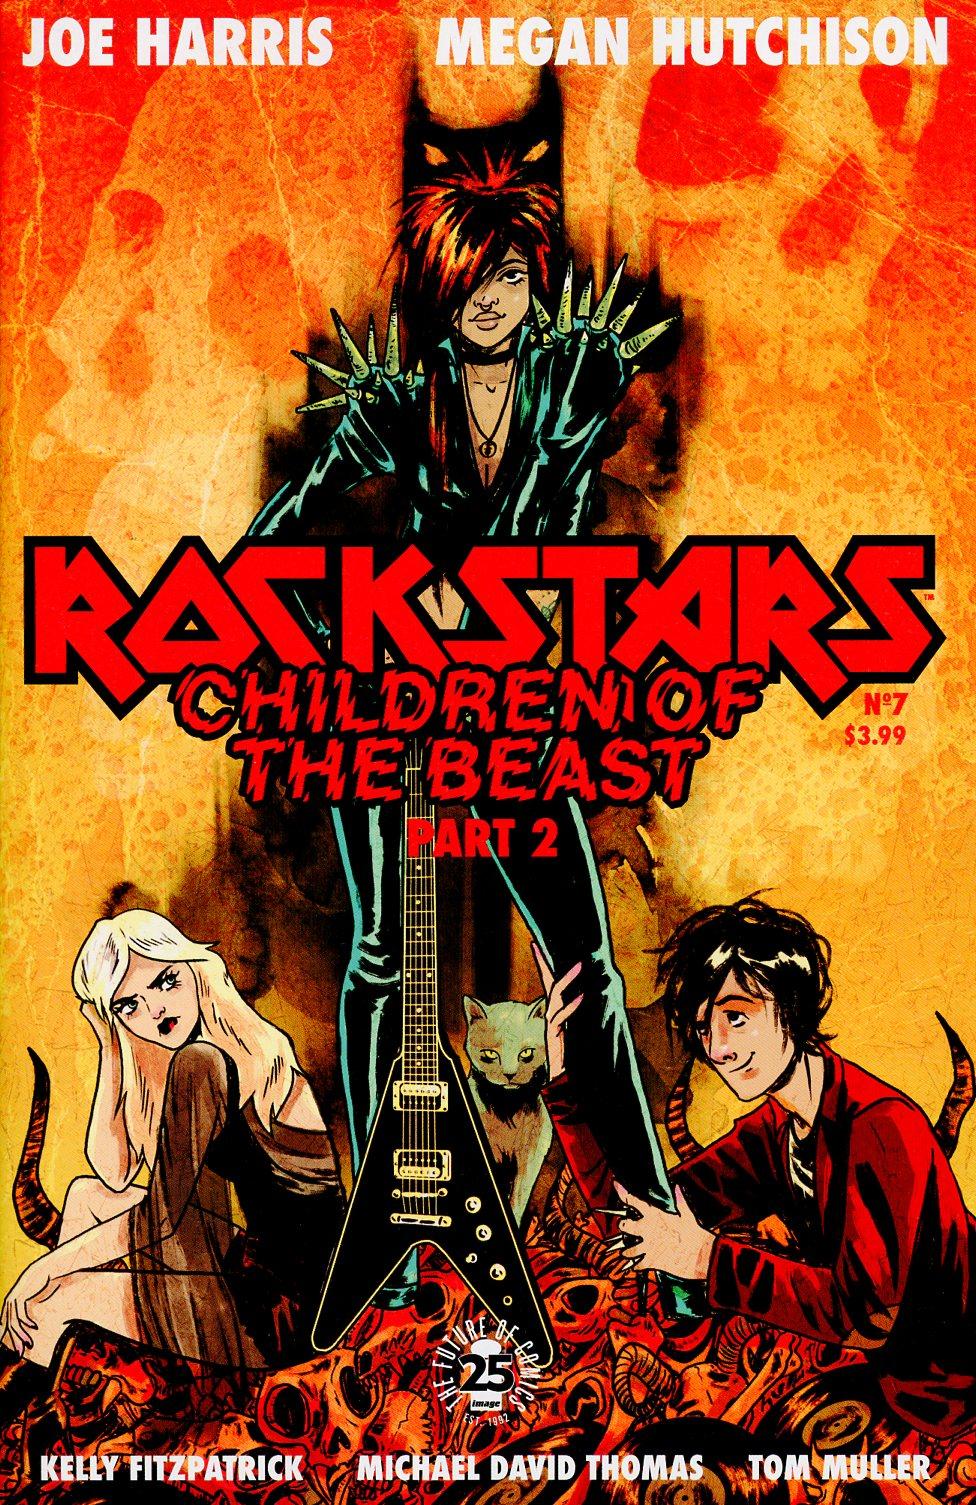 Rockstars Vol. 1 #7